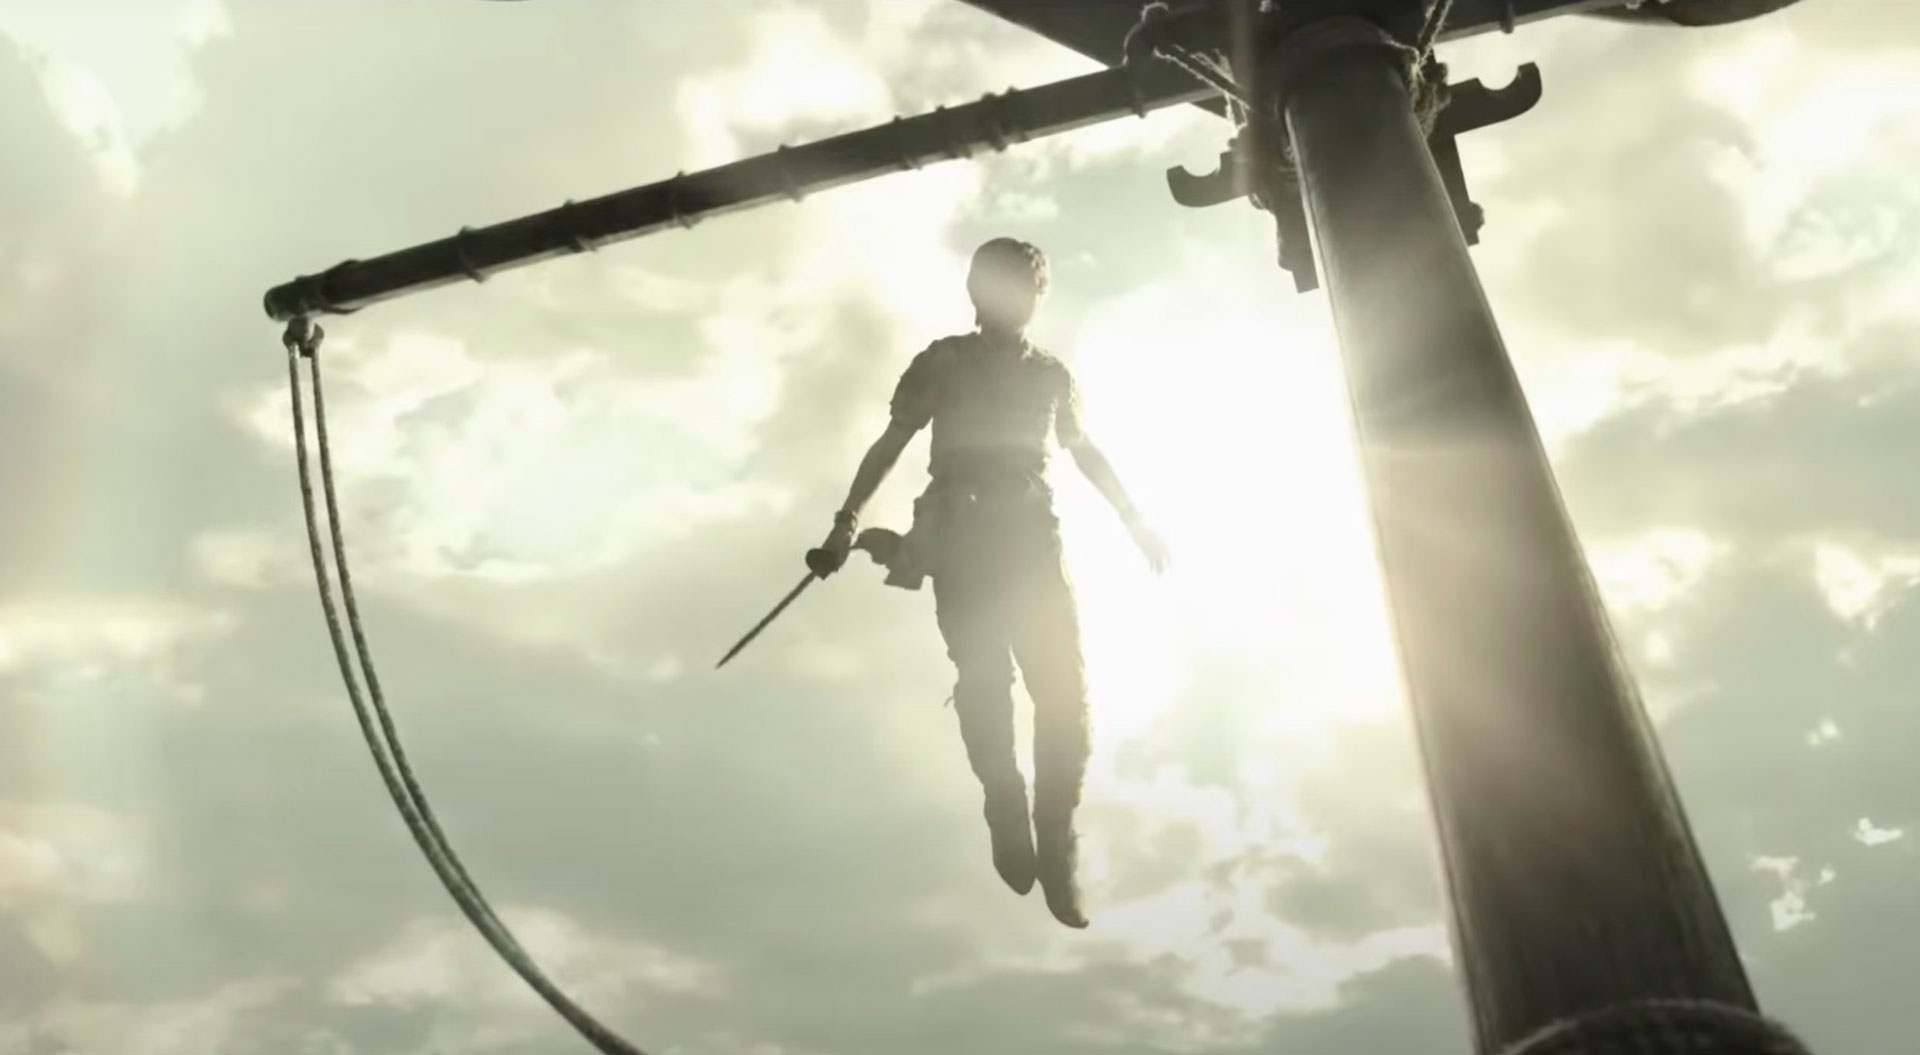 پیتر پن در حال پرواز با شمشیری در دست در یک نمای ضد نور خورشید در فیلم پیتر پن و وندی به کارگردانی دیوید لاوری